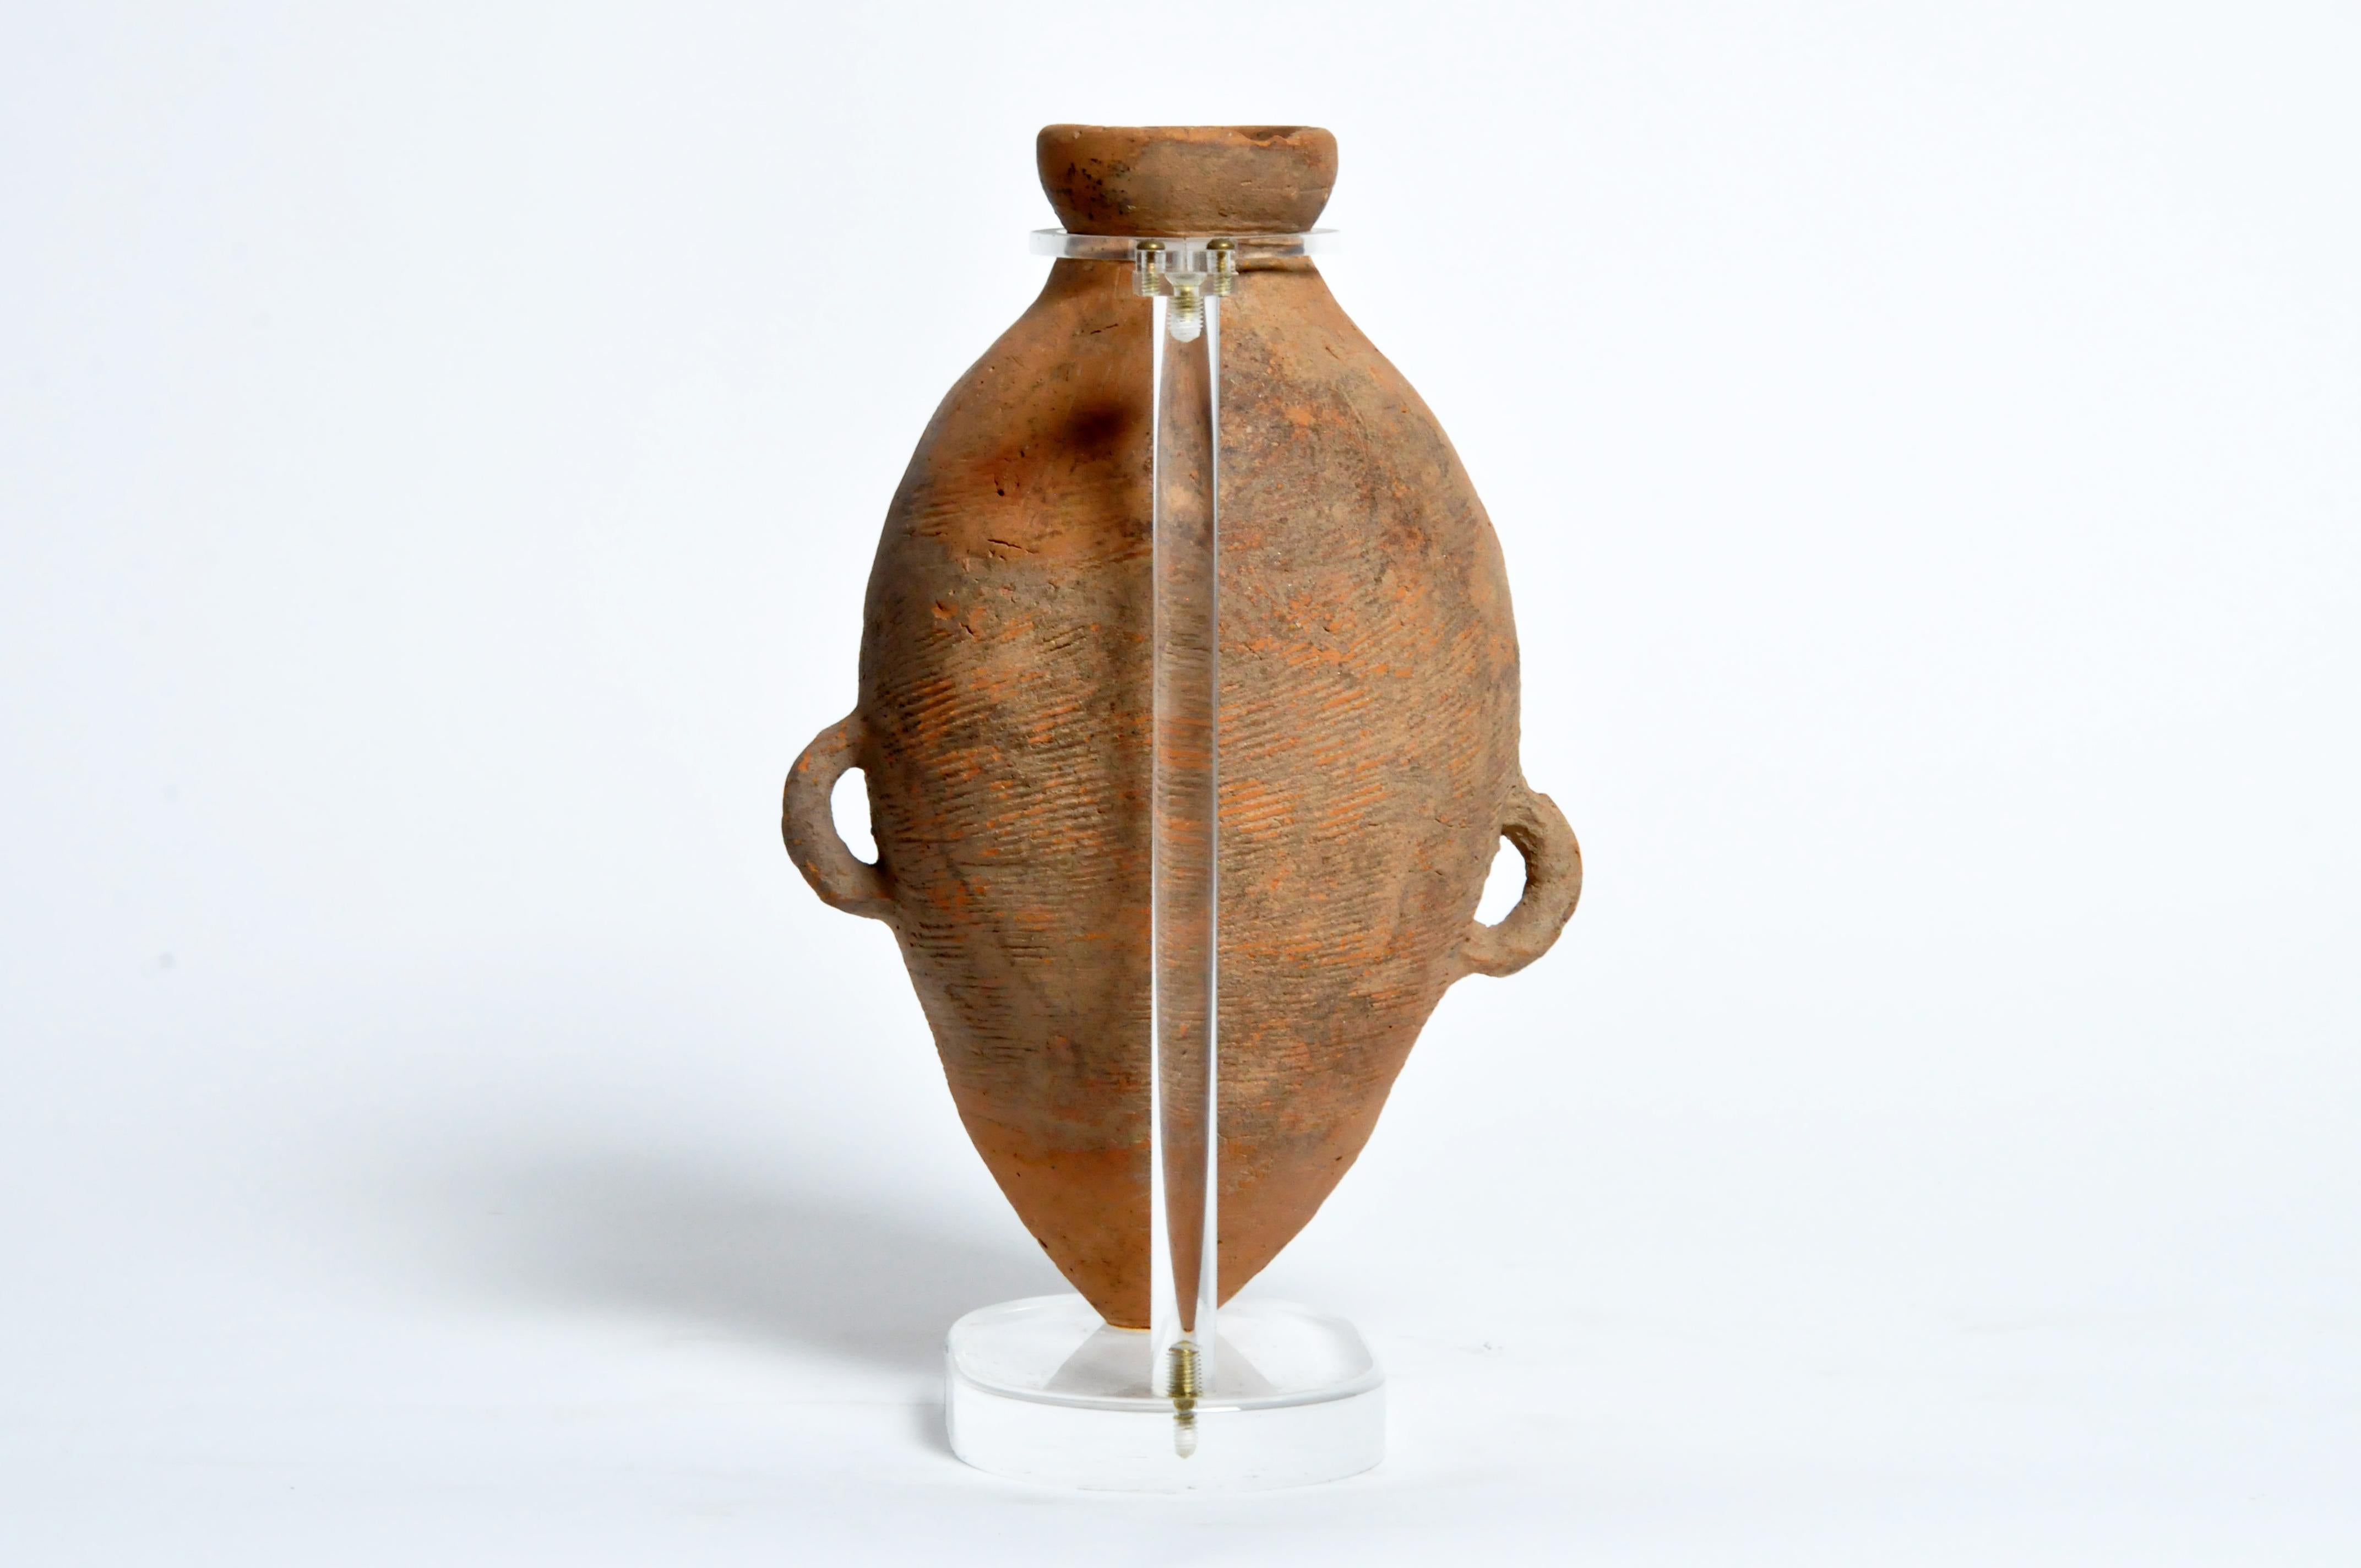 Cette jarre néolithique provient de Chine 3500 avant J.-C. Ces jarres funéraires étaient placées dans les tombes et destinées à être utilisées dans l'au-delà.